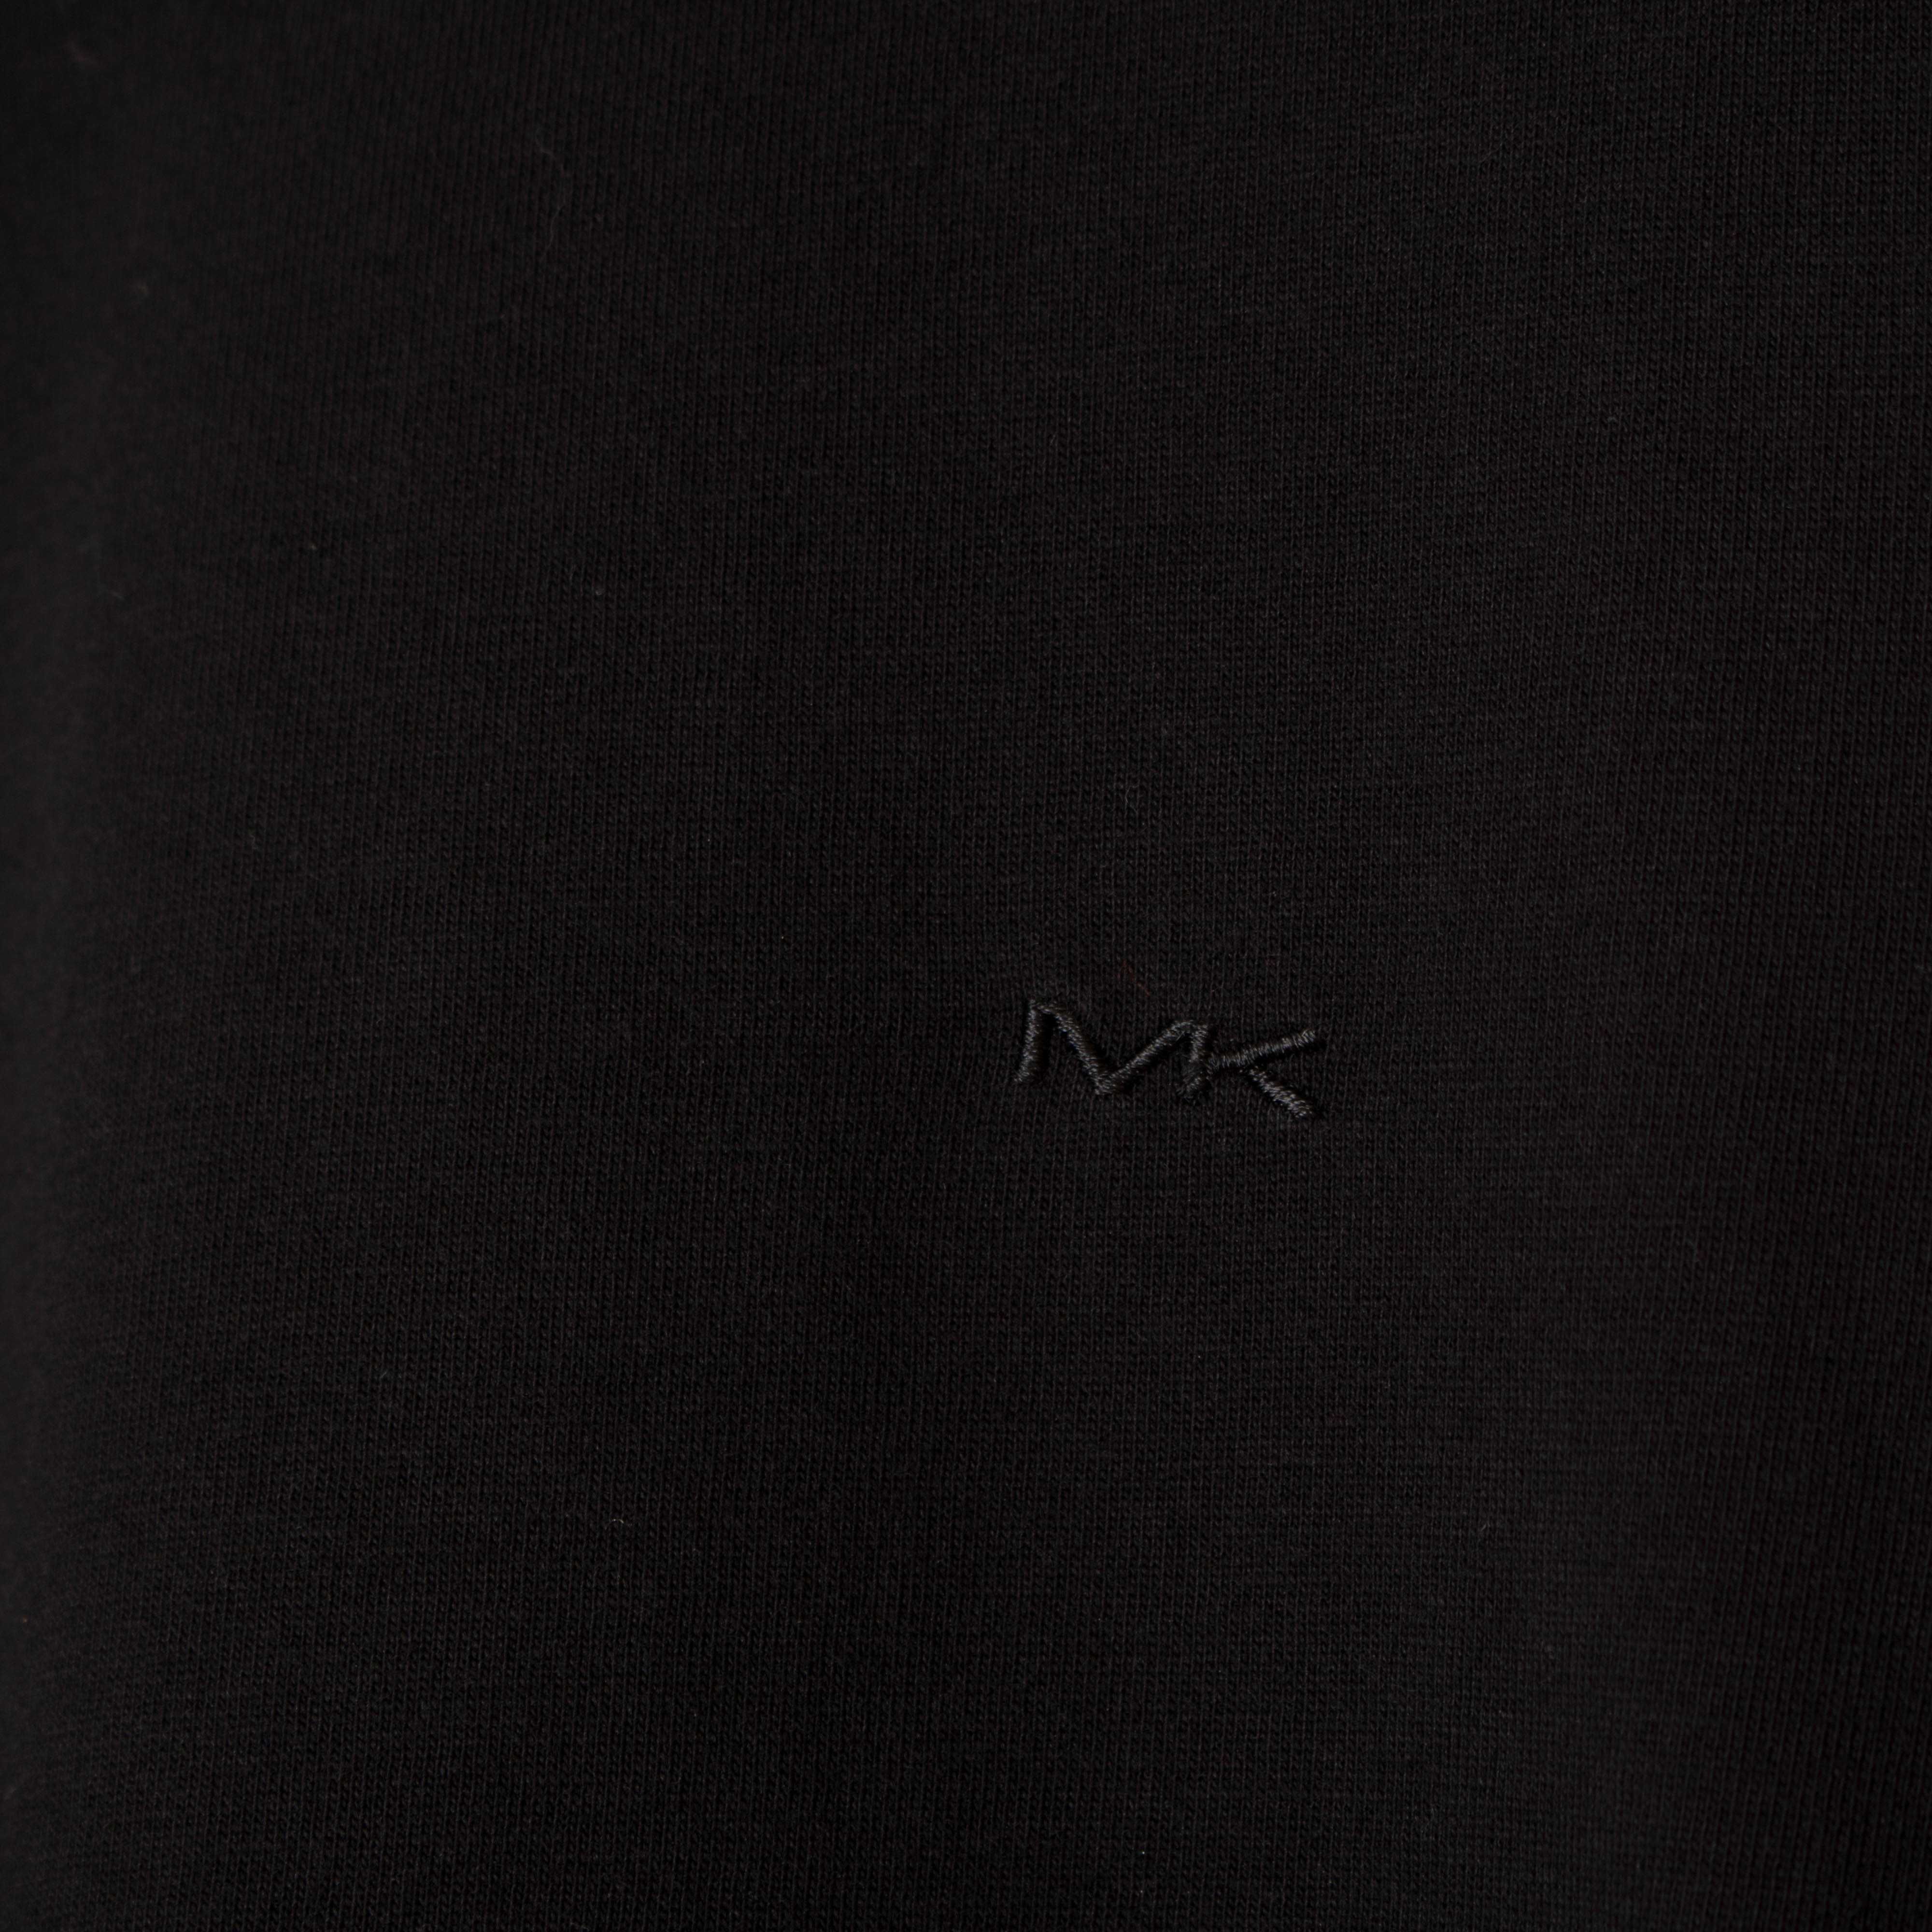 MICHAEL KORS Мъжка черна тениска размер M